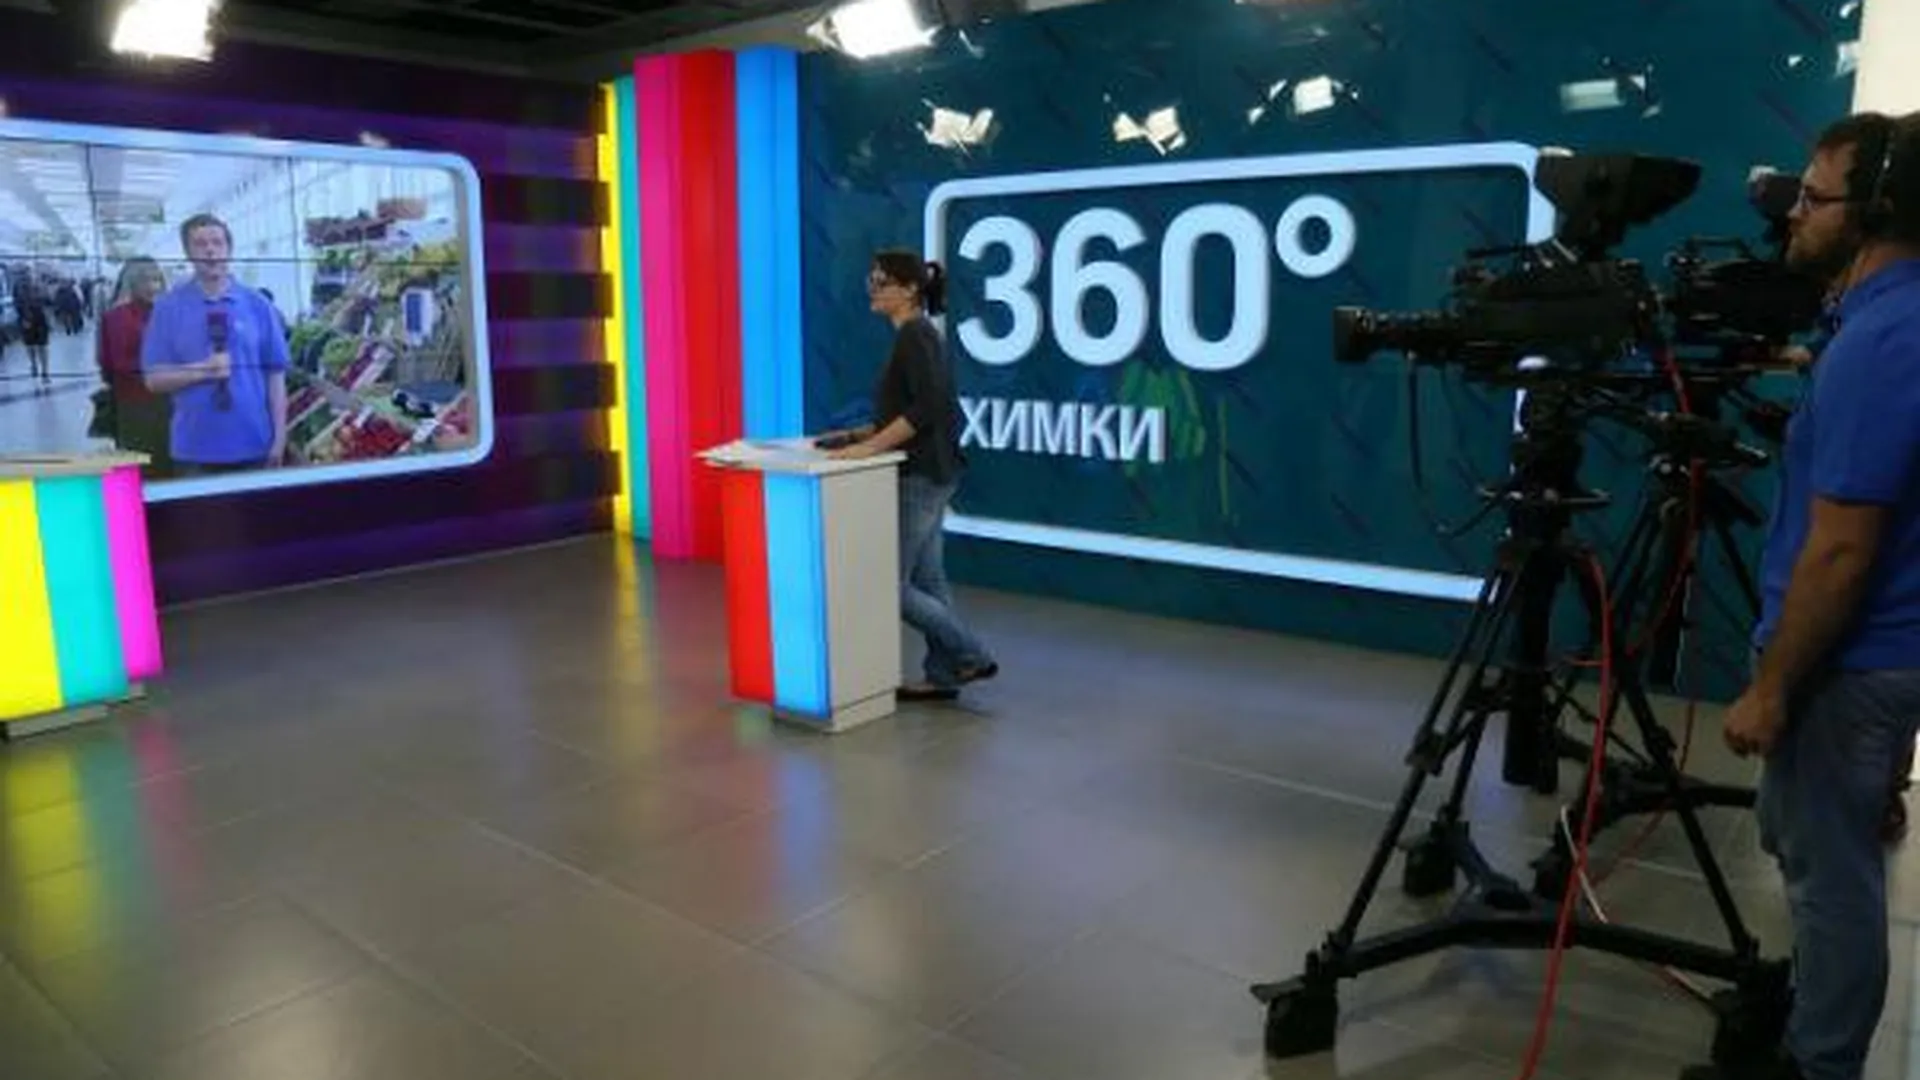 Александр Щемляев / Подмосковье сегодня